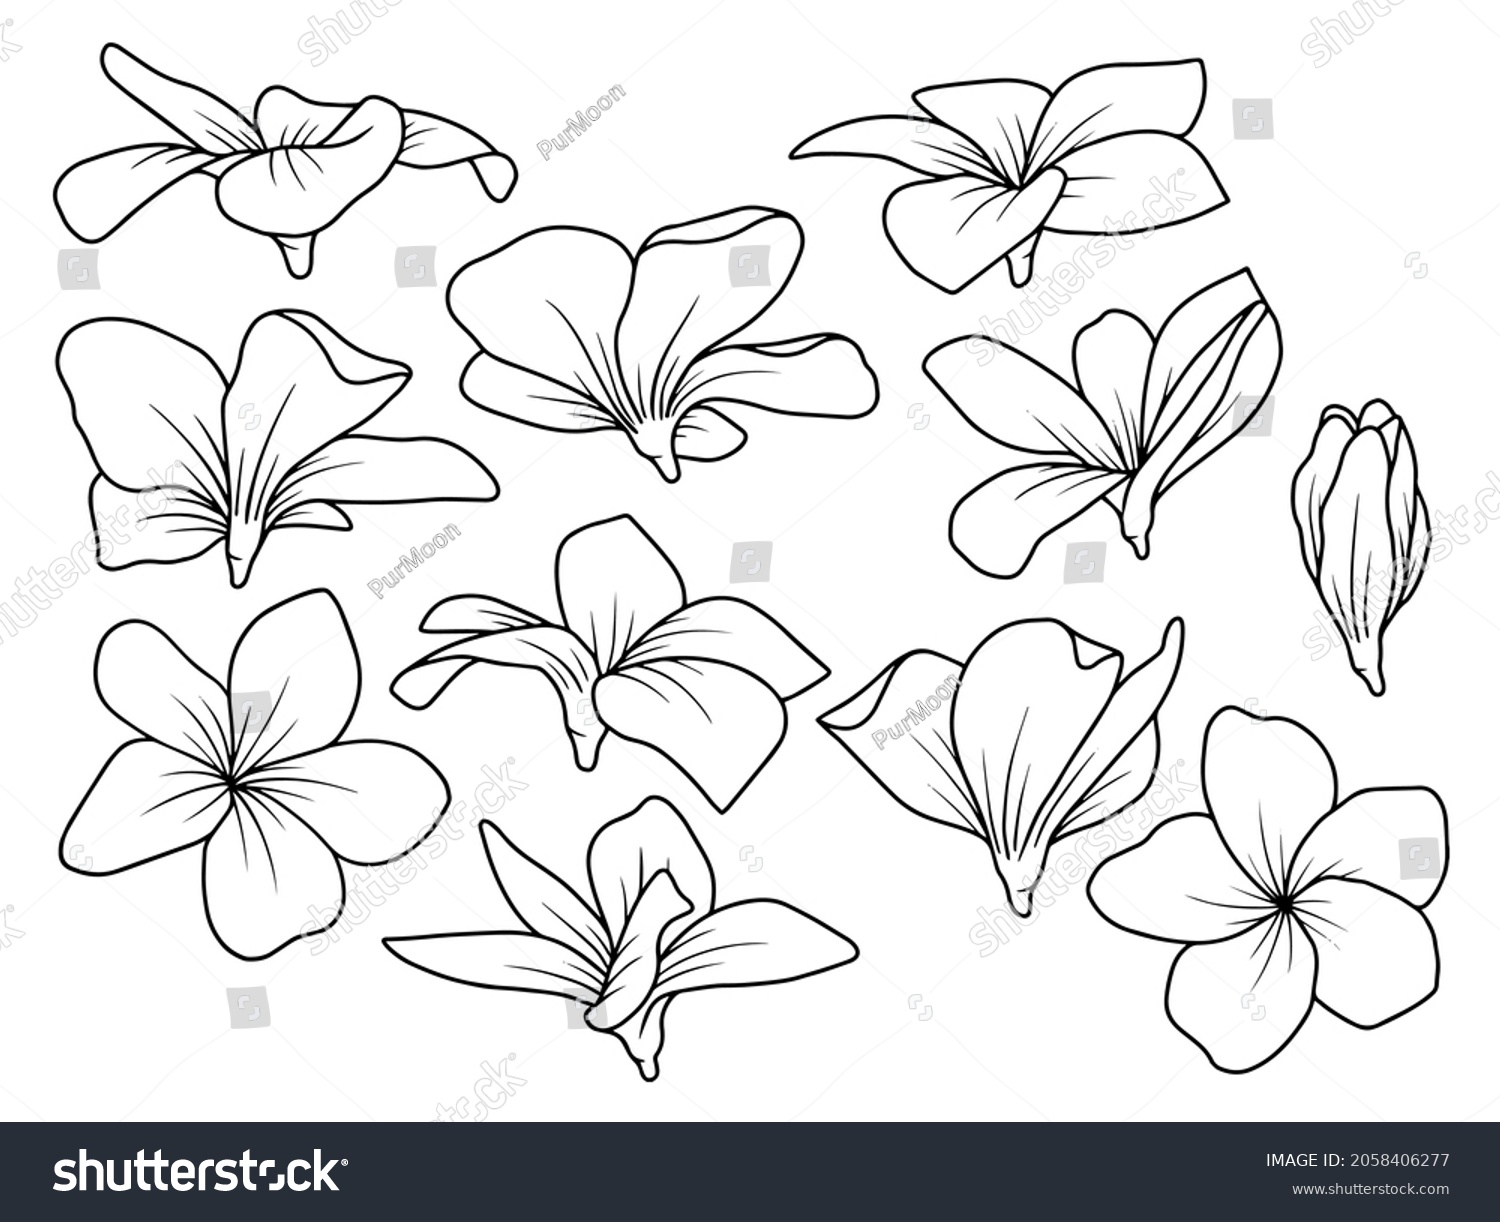 SVG of Hand drawn flower sketch line art illustration set. svg